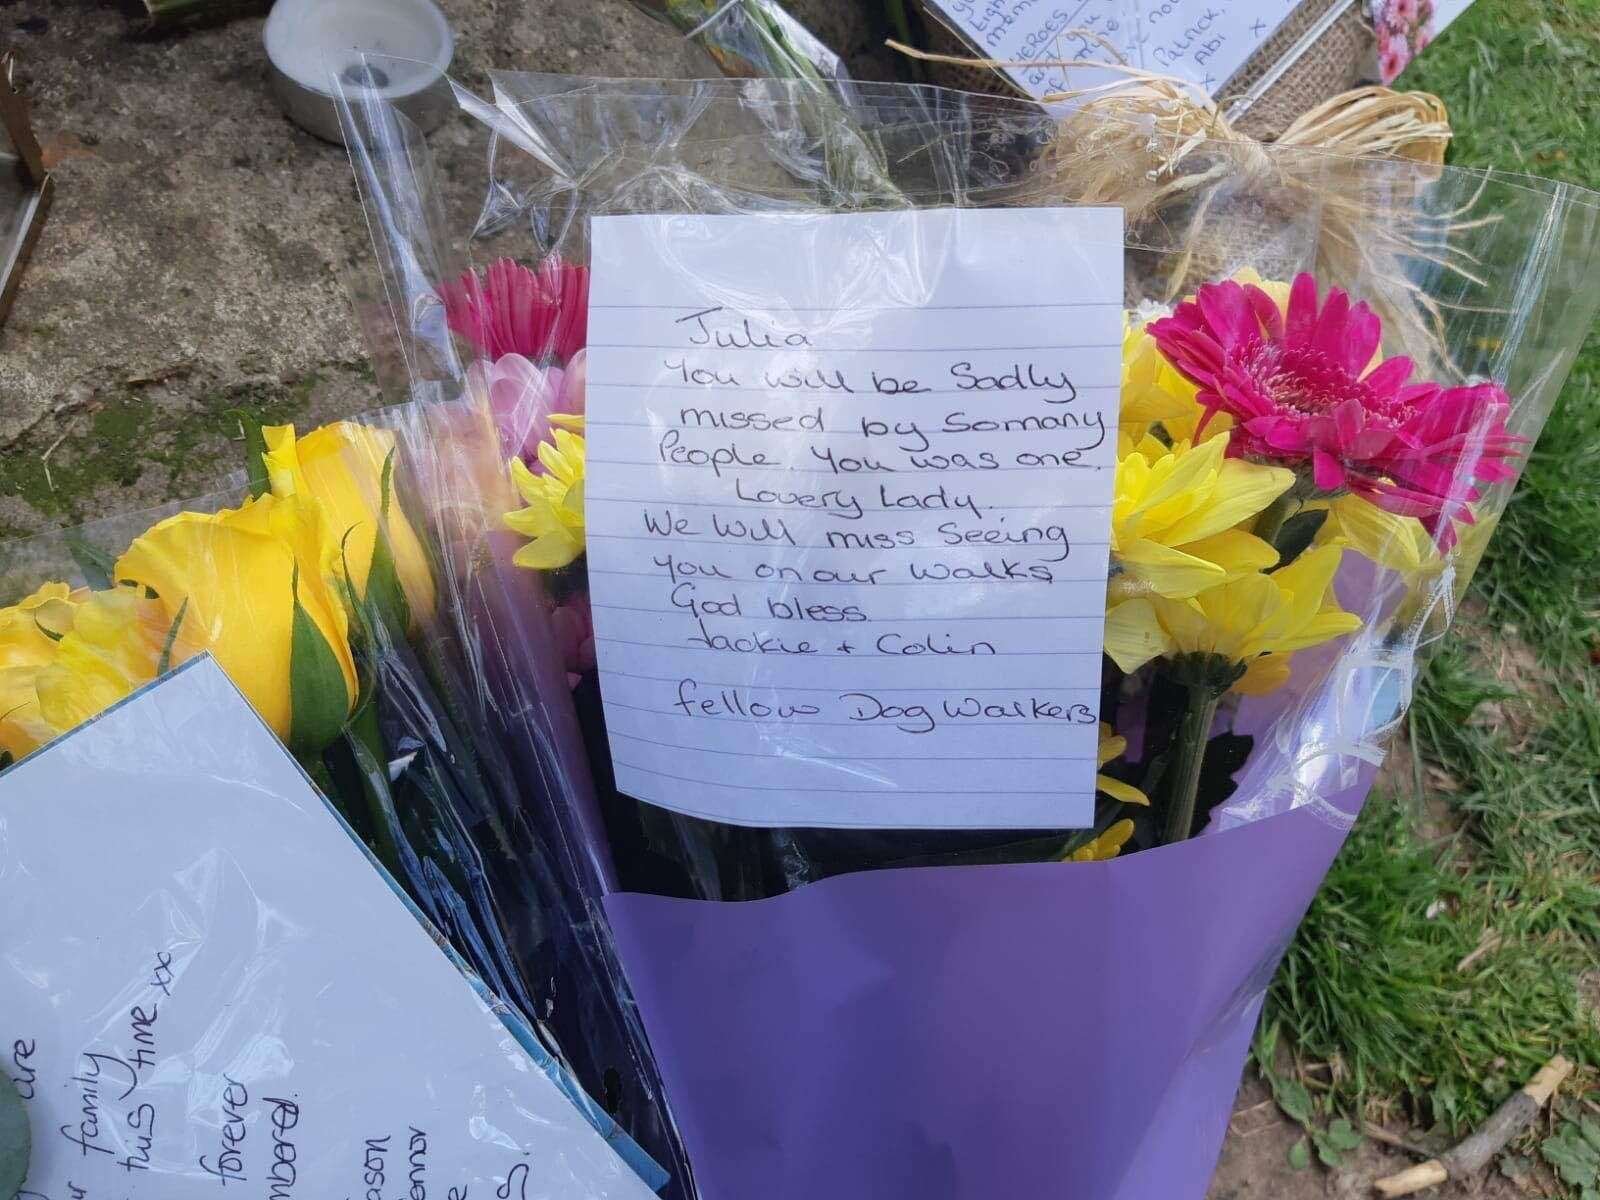 Floral tributes in Aylesham for Julia James